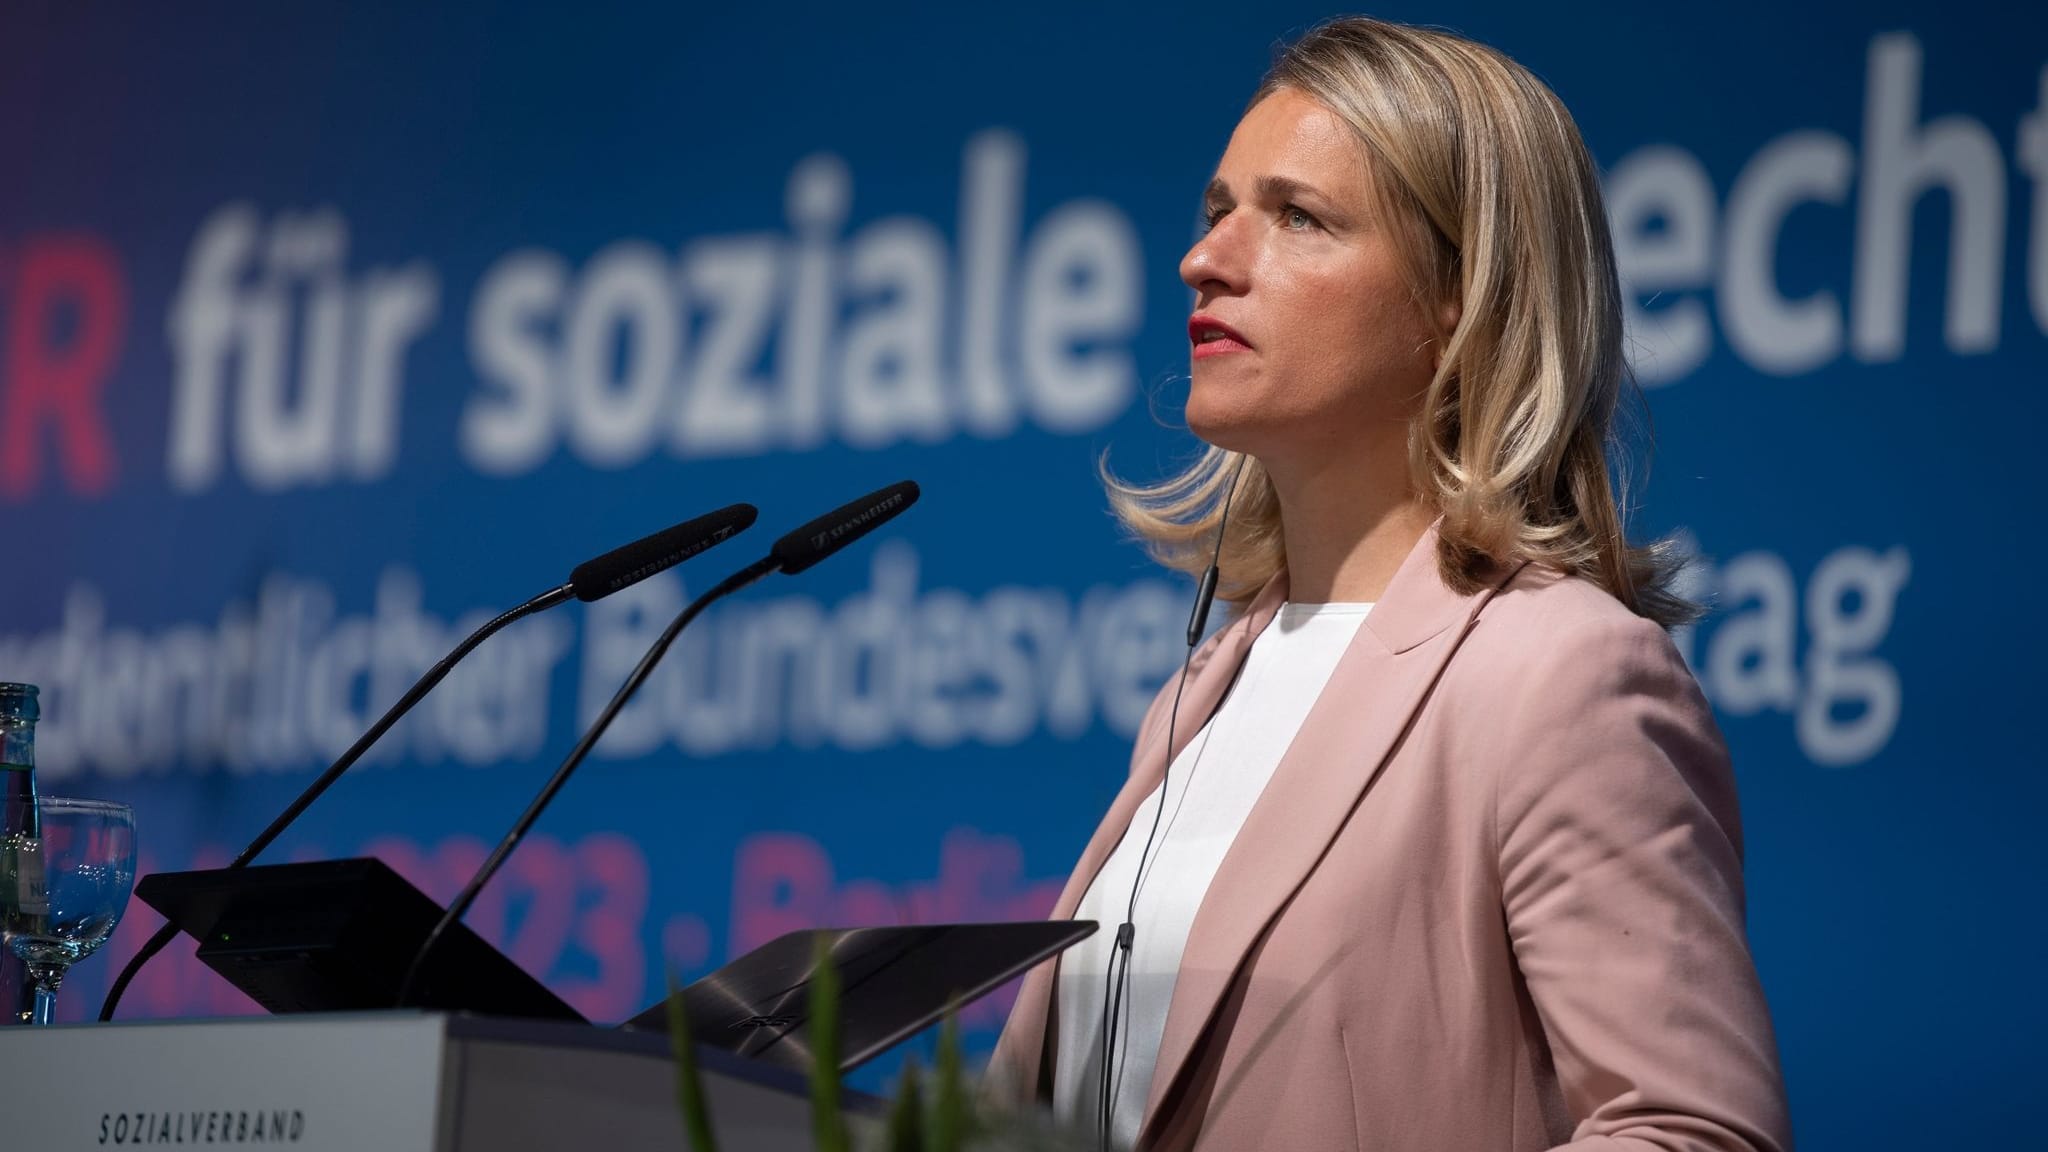 Kindergrundsicherung: Sozialverband fordert Scholz-Machtwort